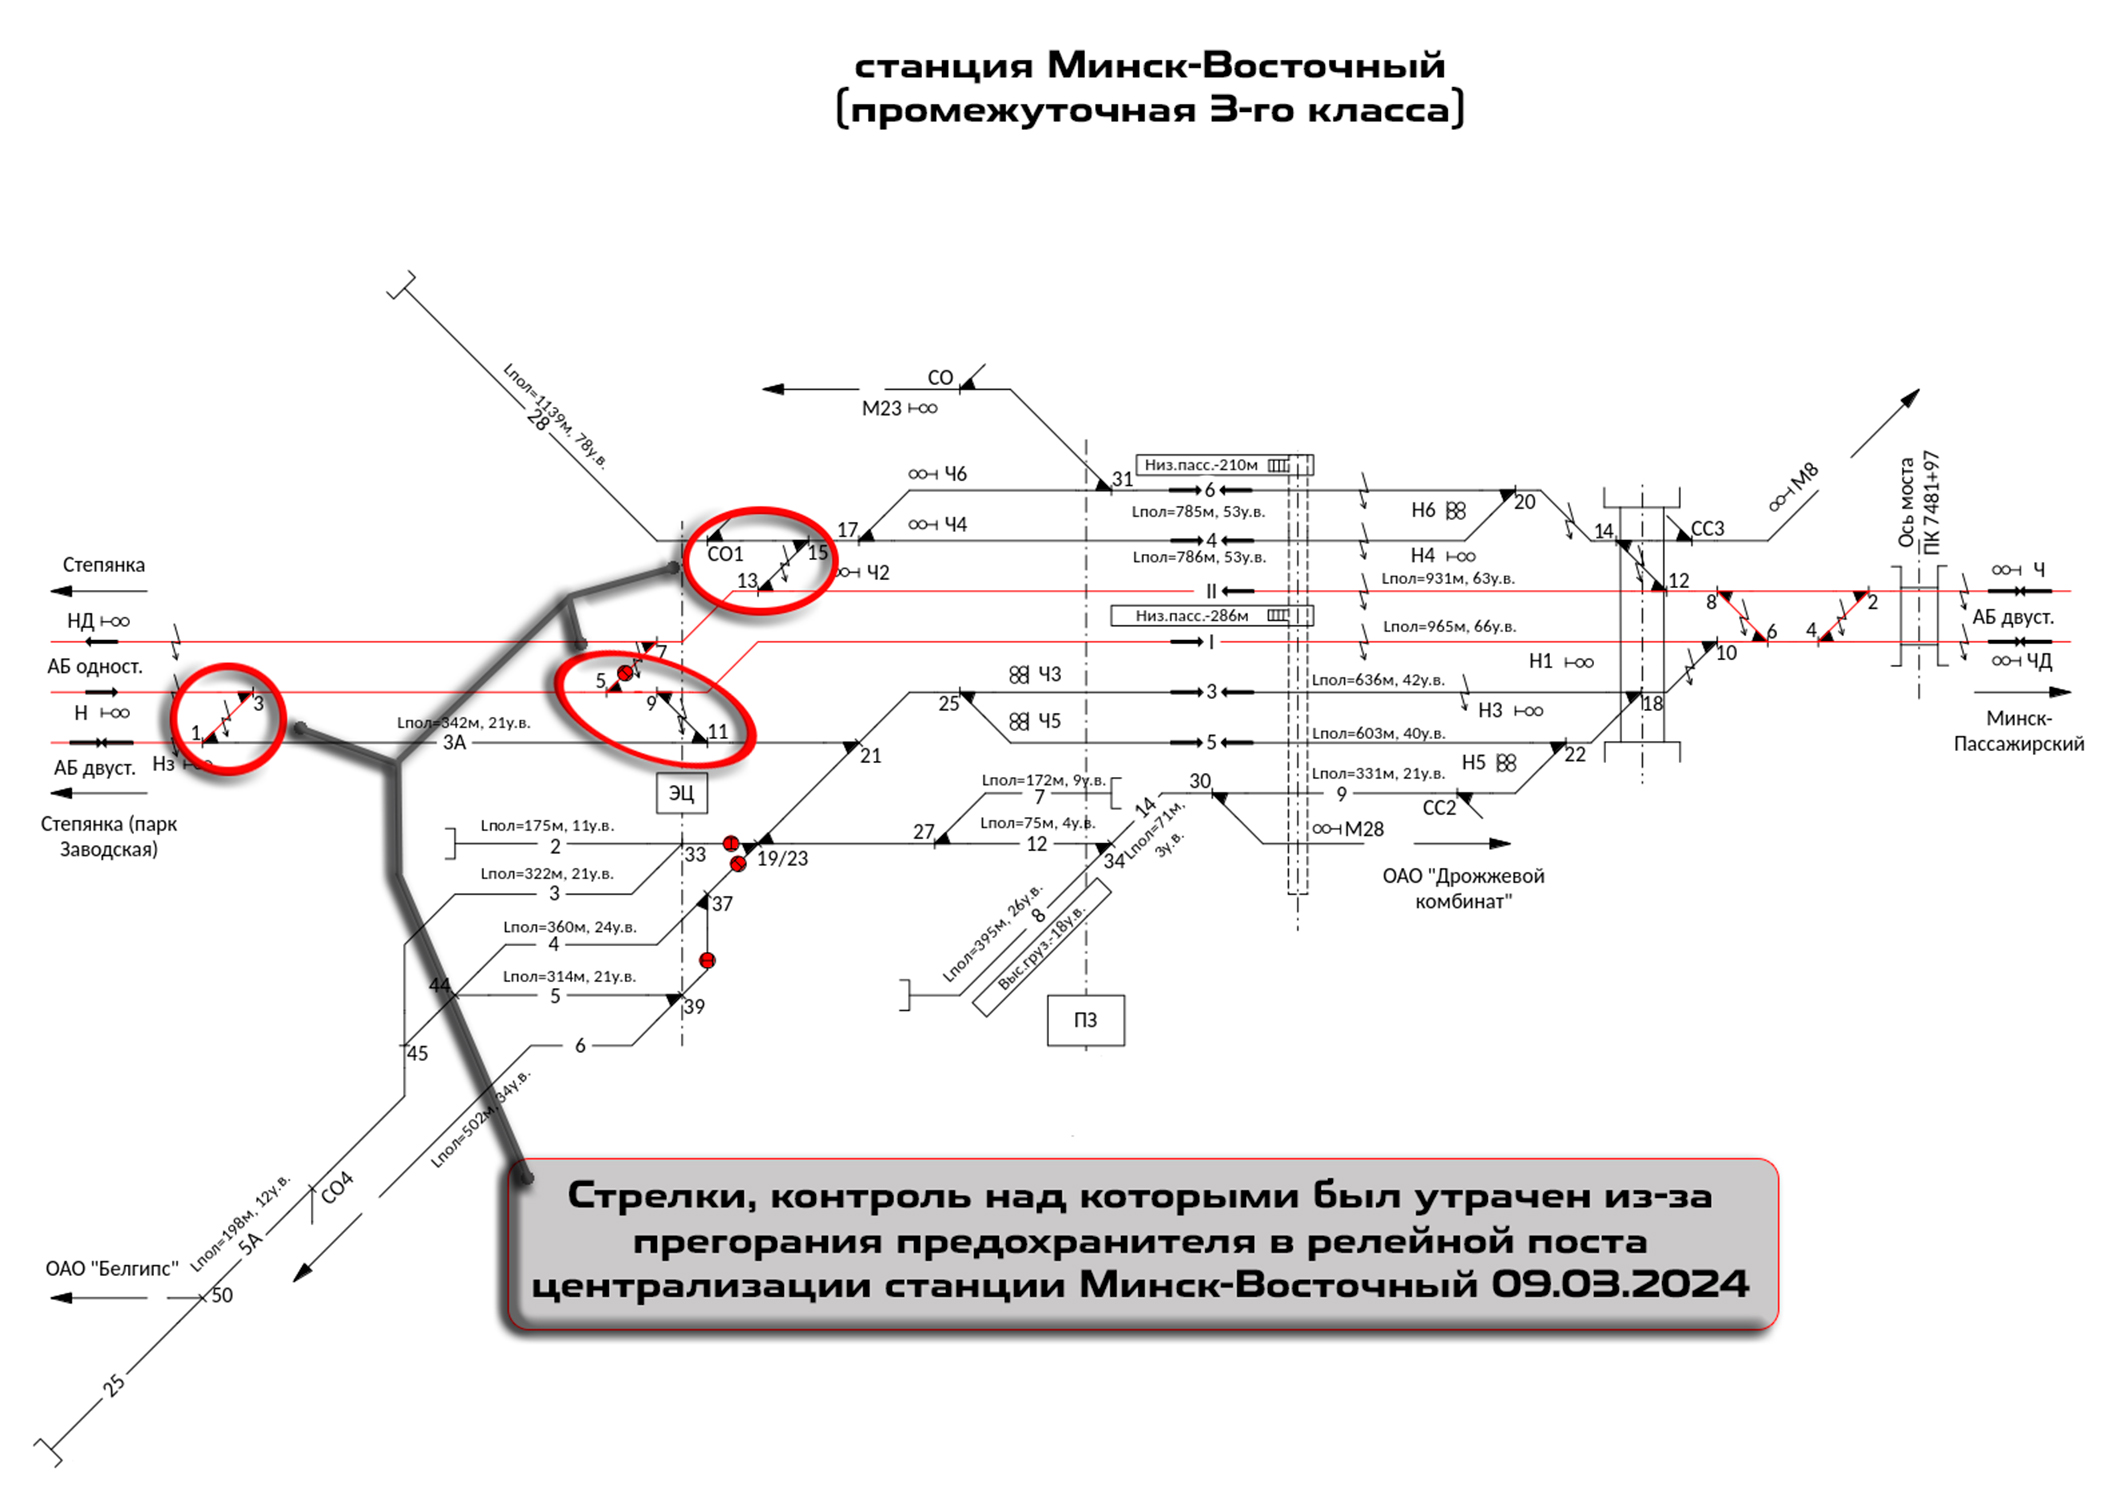 Схема станции Минск-Восточный с с расположением стрелок≤ контроль над положением которых был утрачен из-за перегорания предохранителя 09.03.2024